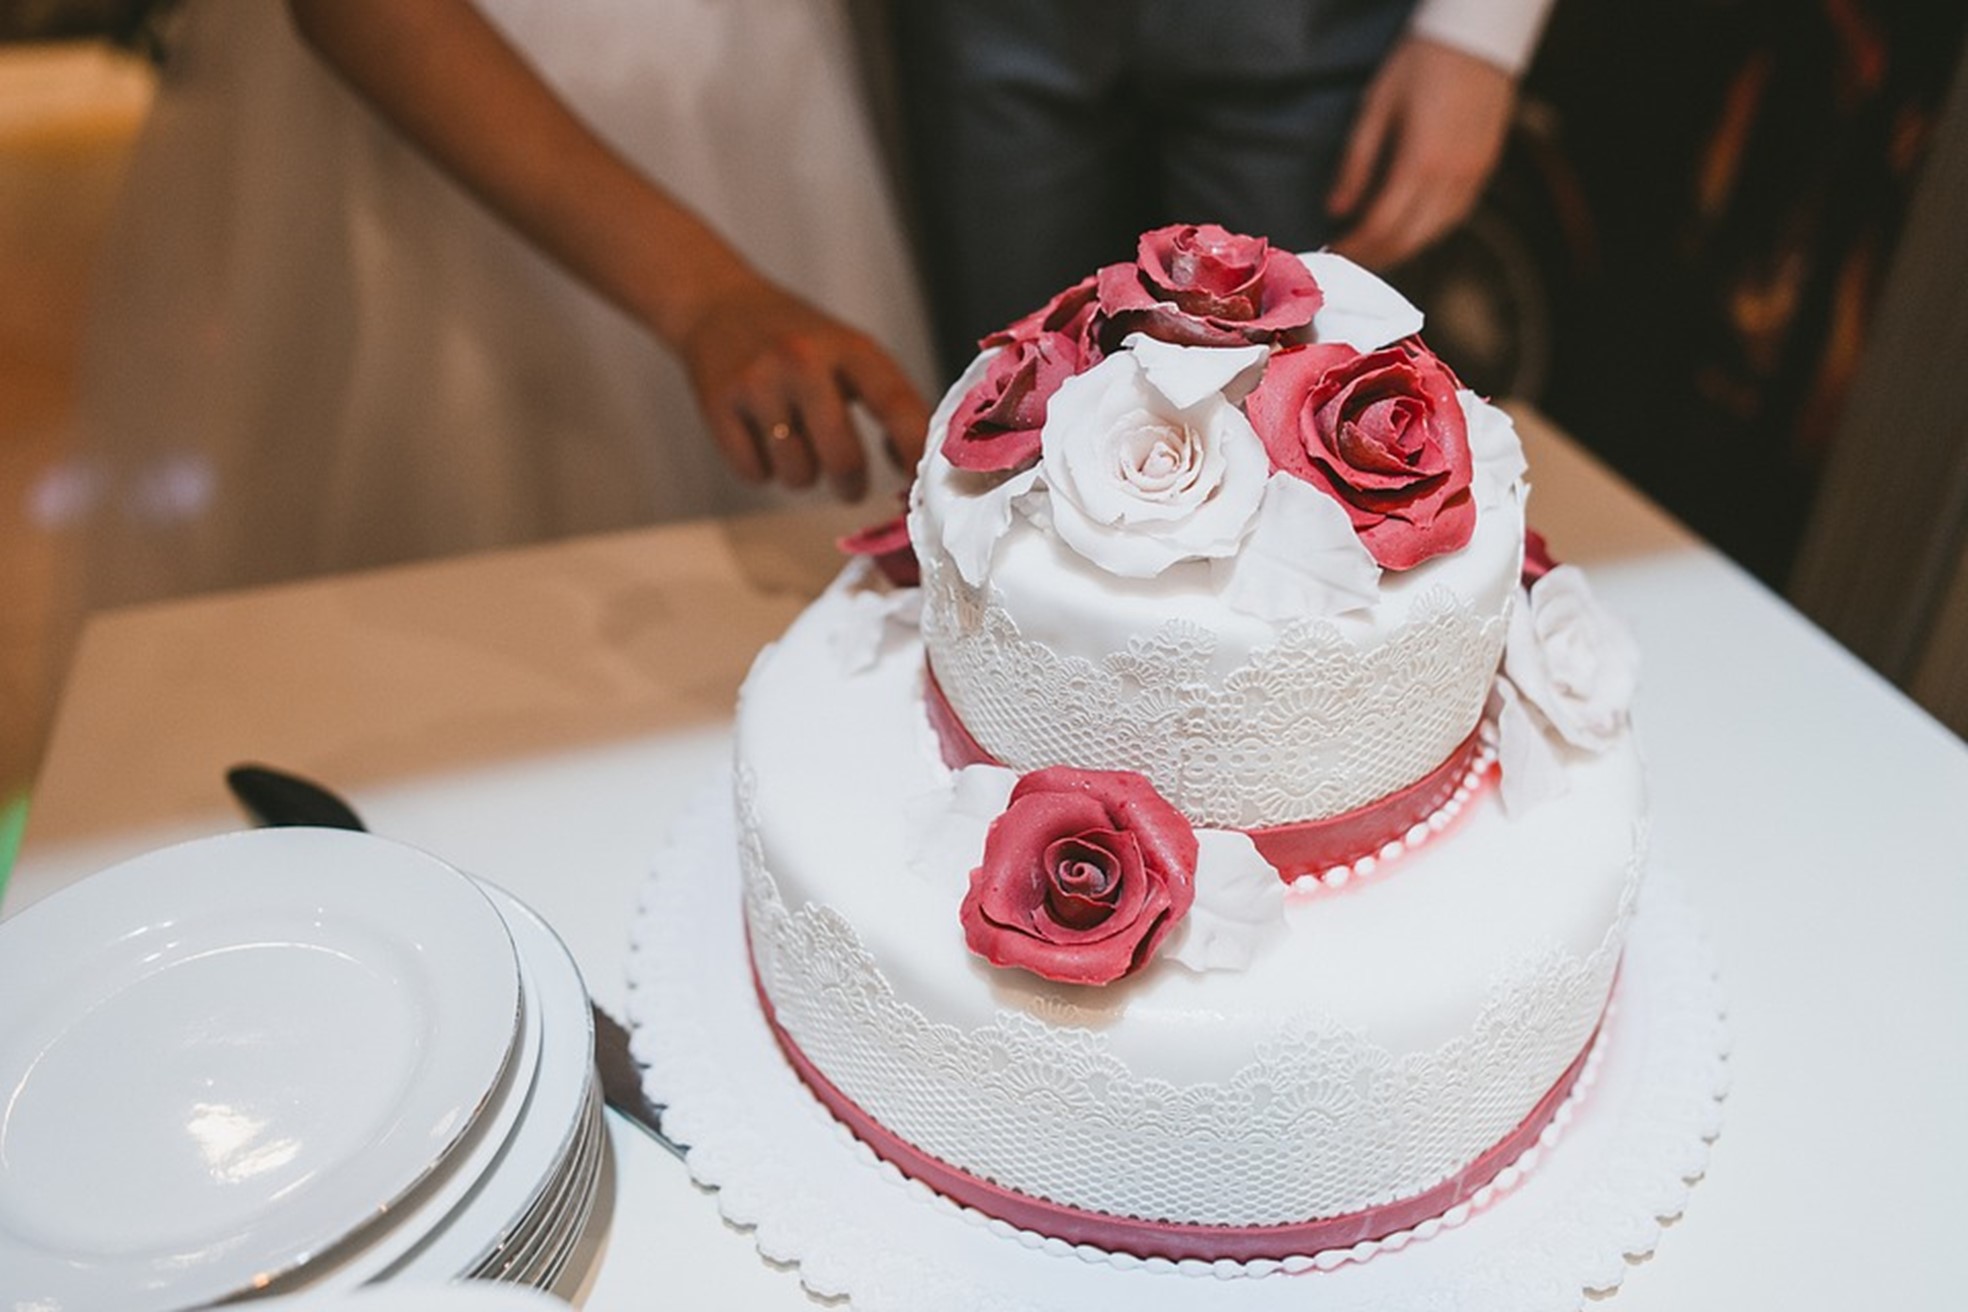 Vestuvinis tortas – ne tik skanus, bet ir gražiai nufotografuojamas